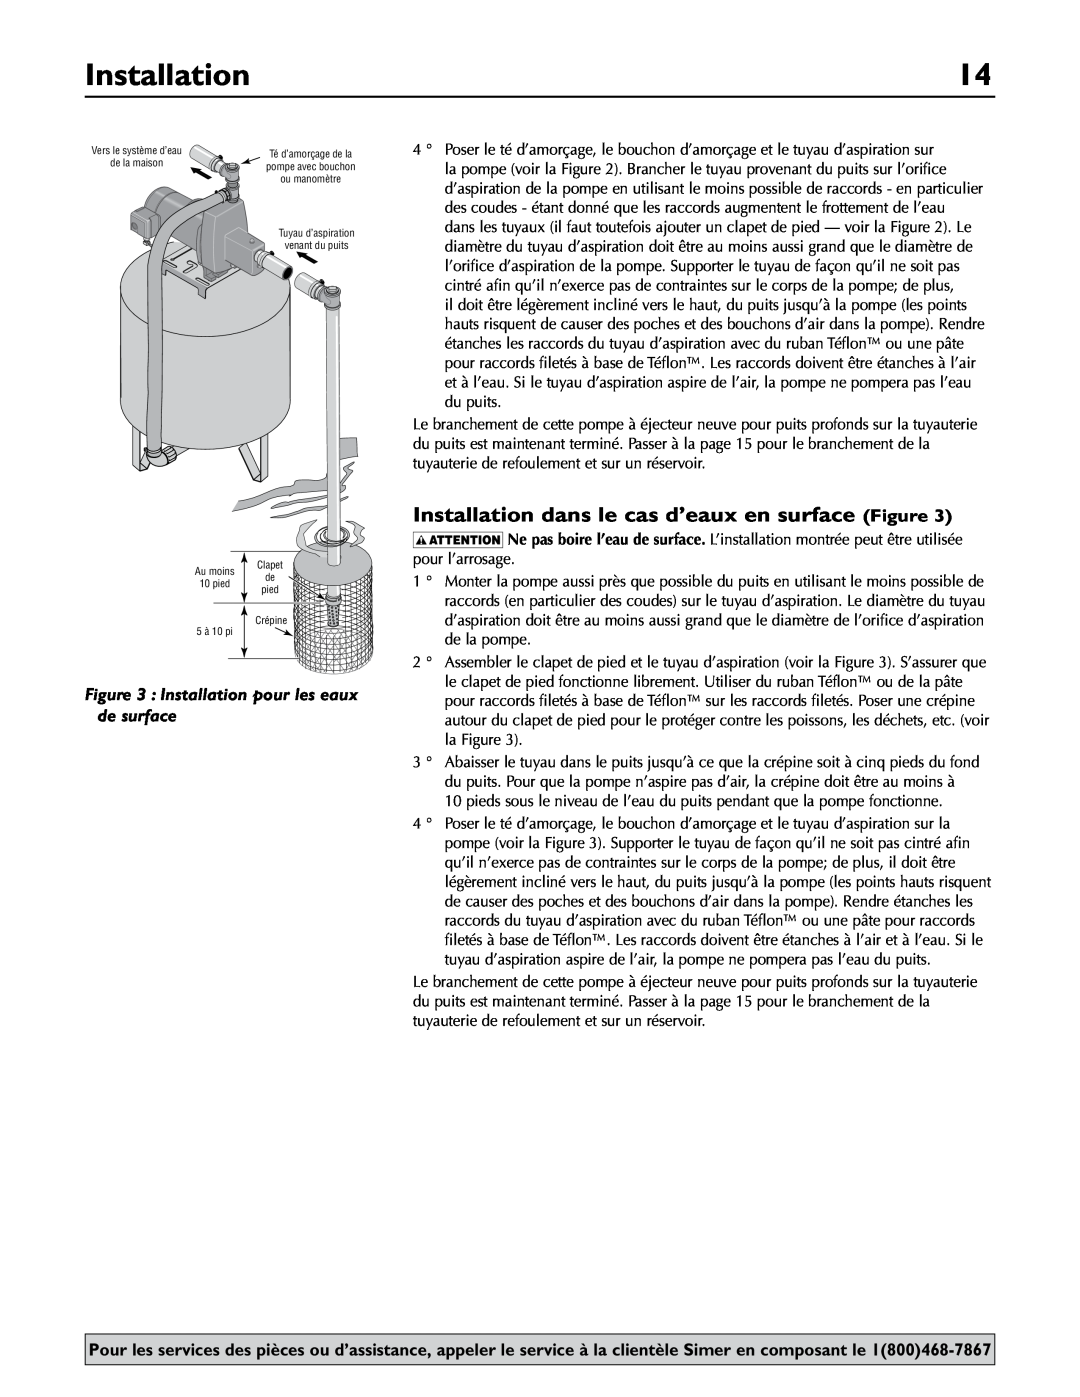 Simer Pumps 2.81E+01 owner manual Installation dans le cas d’eaux en surface Figure 